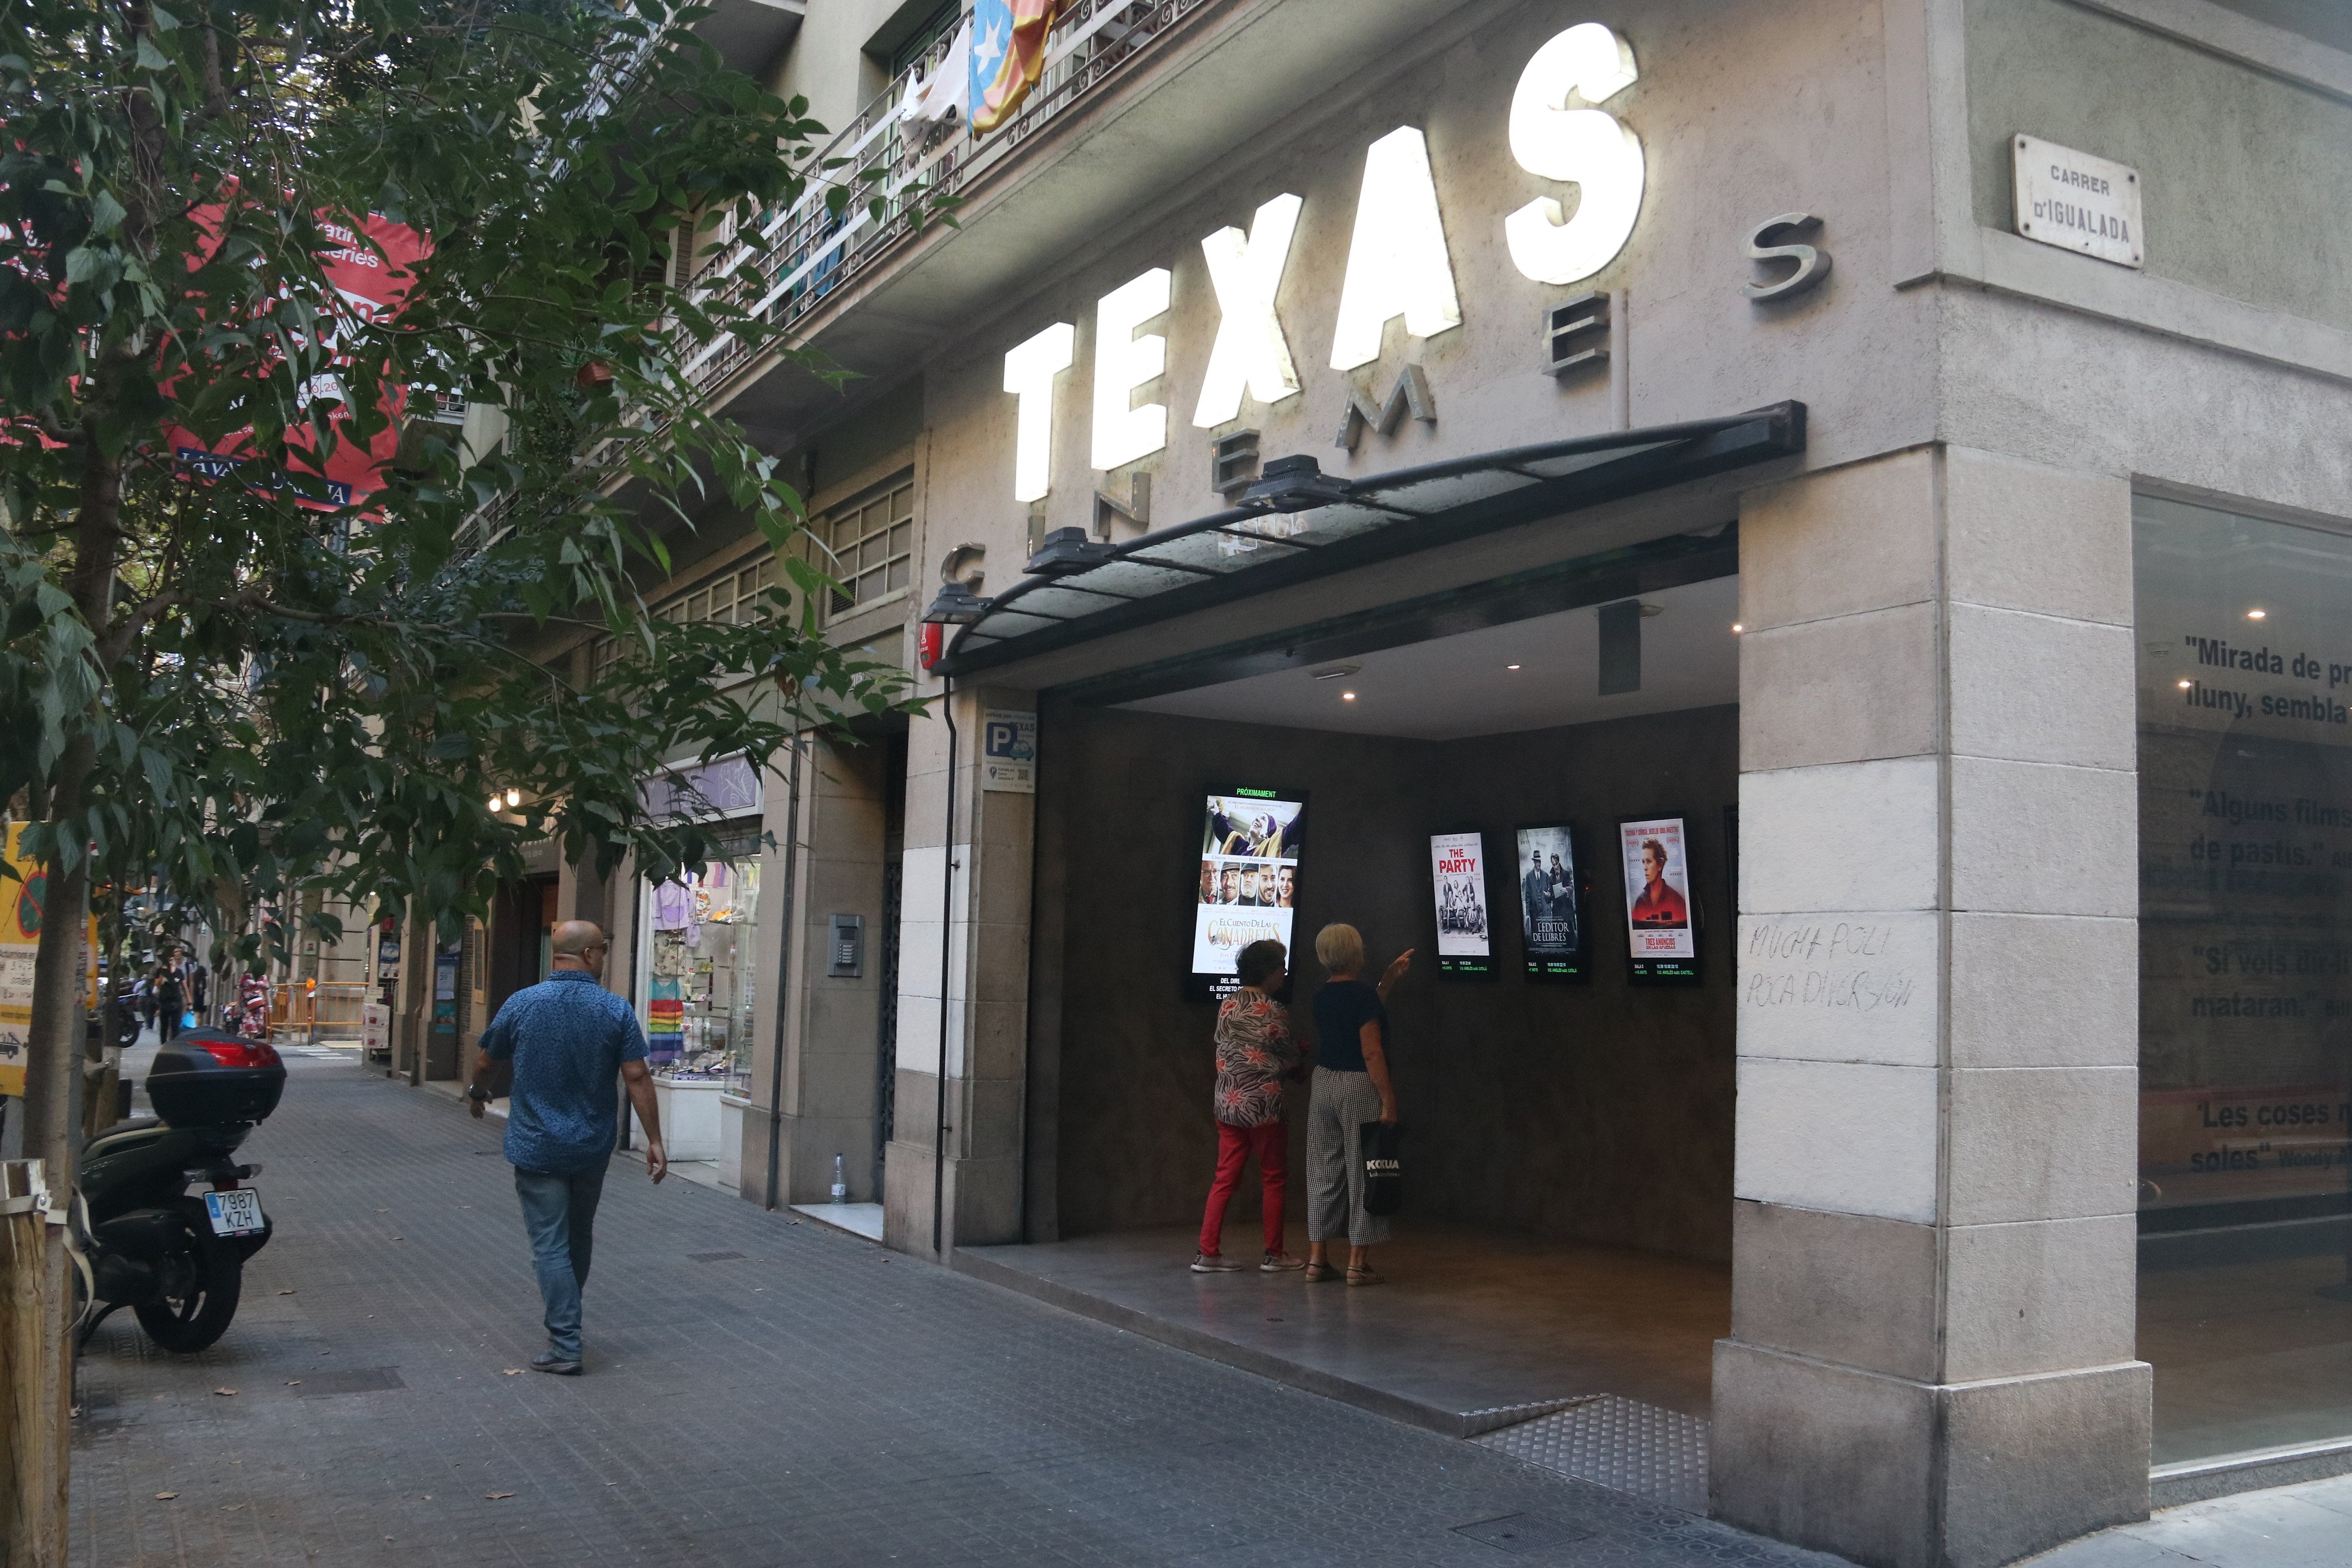 El nuevo Texas prevé abrir en septiembre con 2 salas de cine, teatro y espacio gastronómico